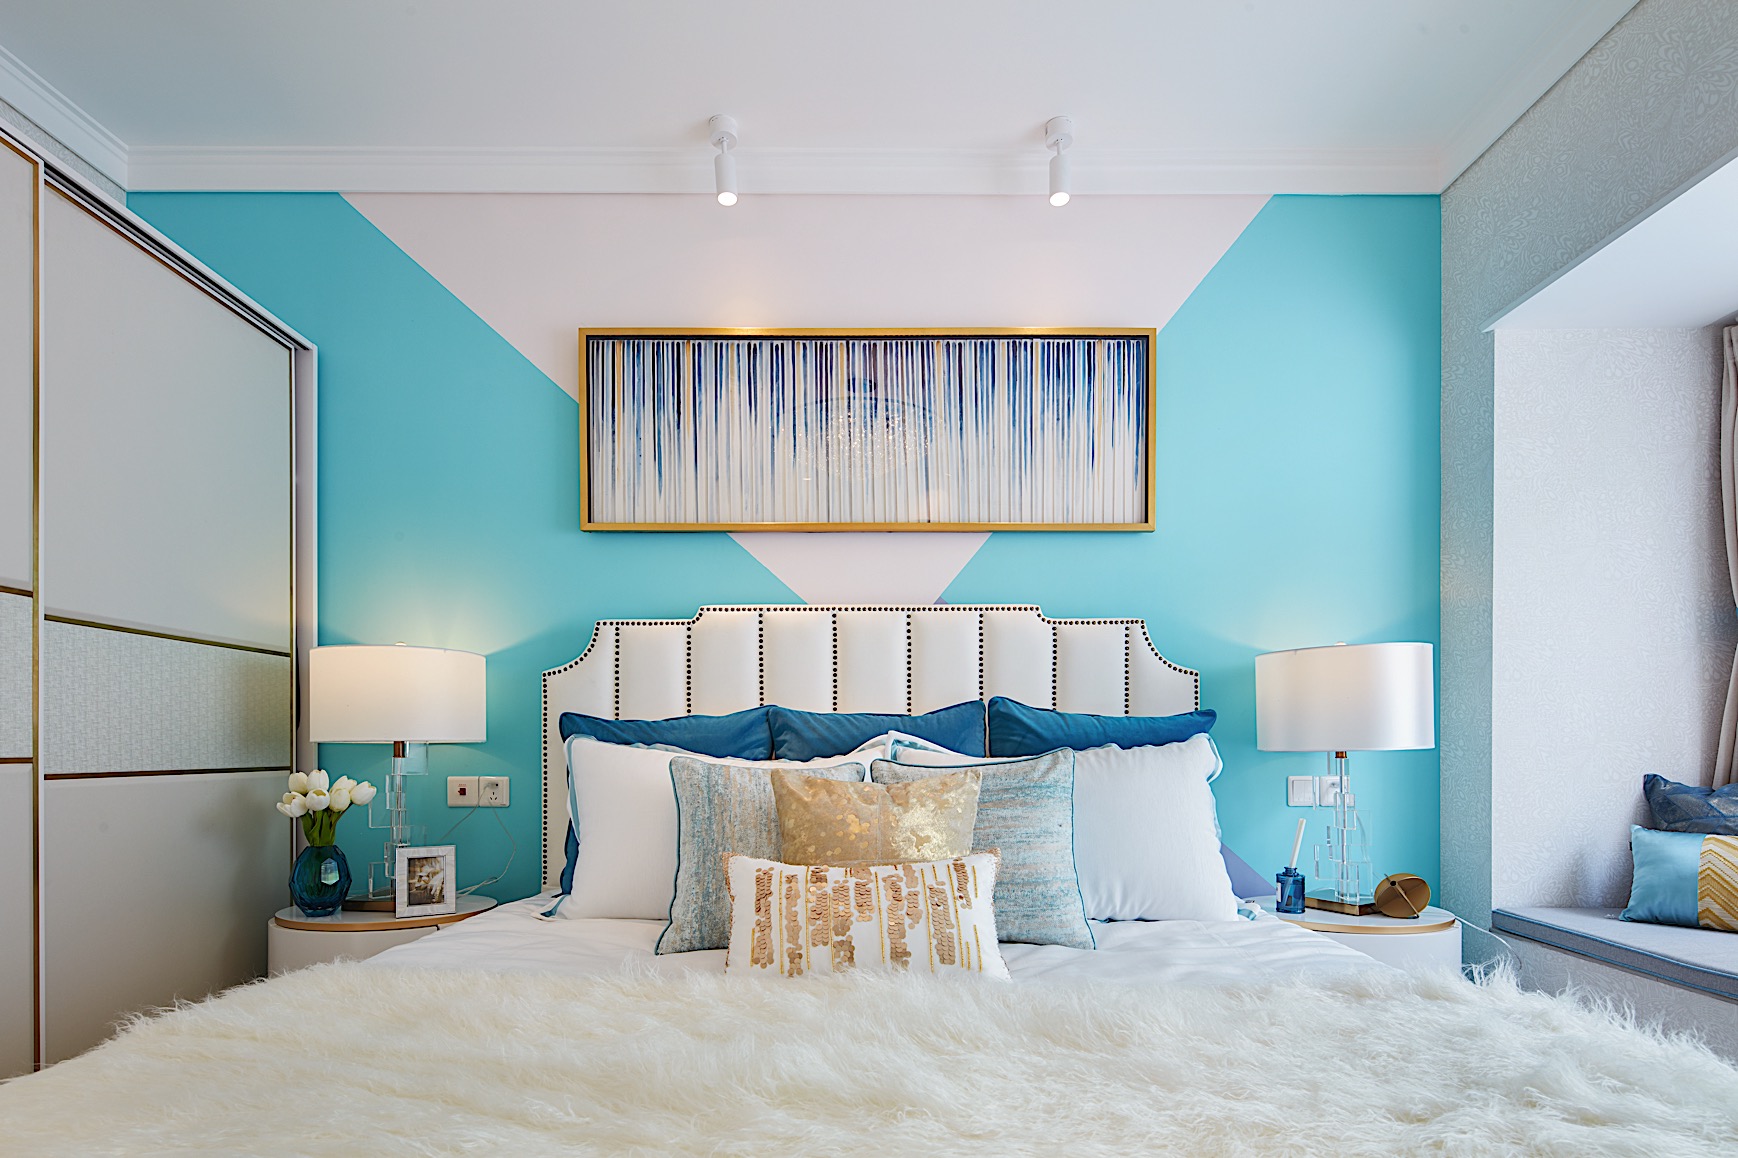 主卧背景墙采用蓝白色彩对比，搭配精致软装，创造出丰富而优美的视觉效果。